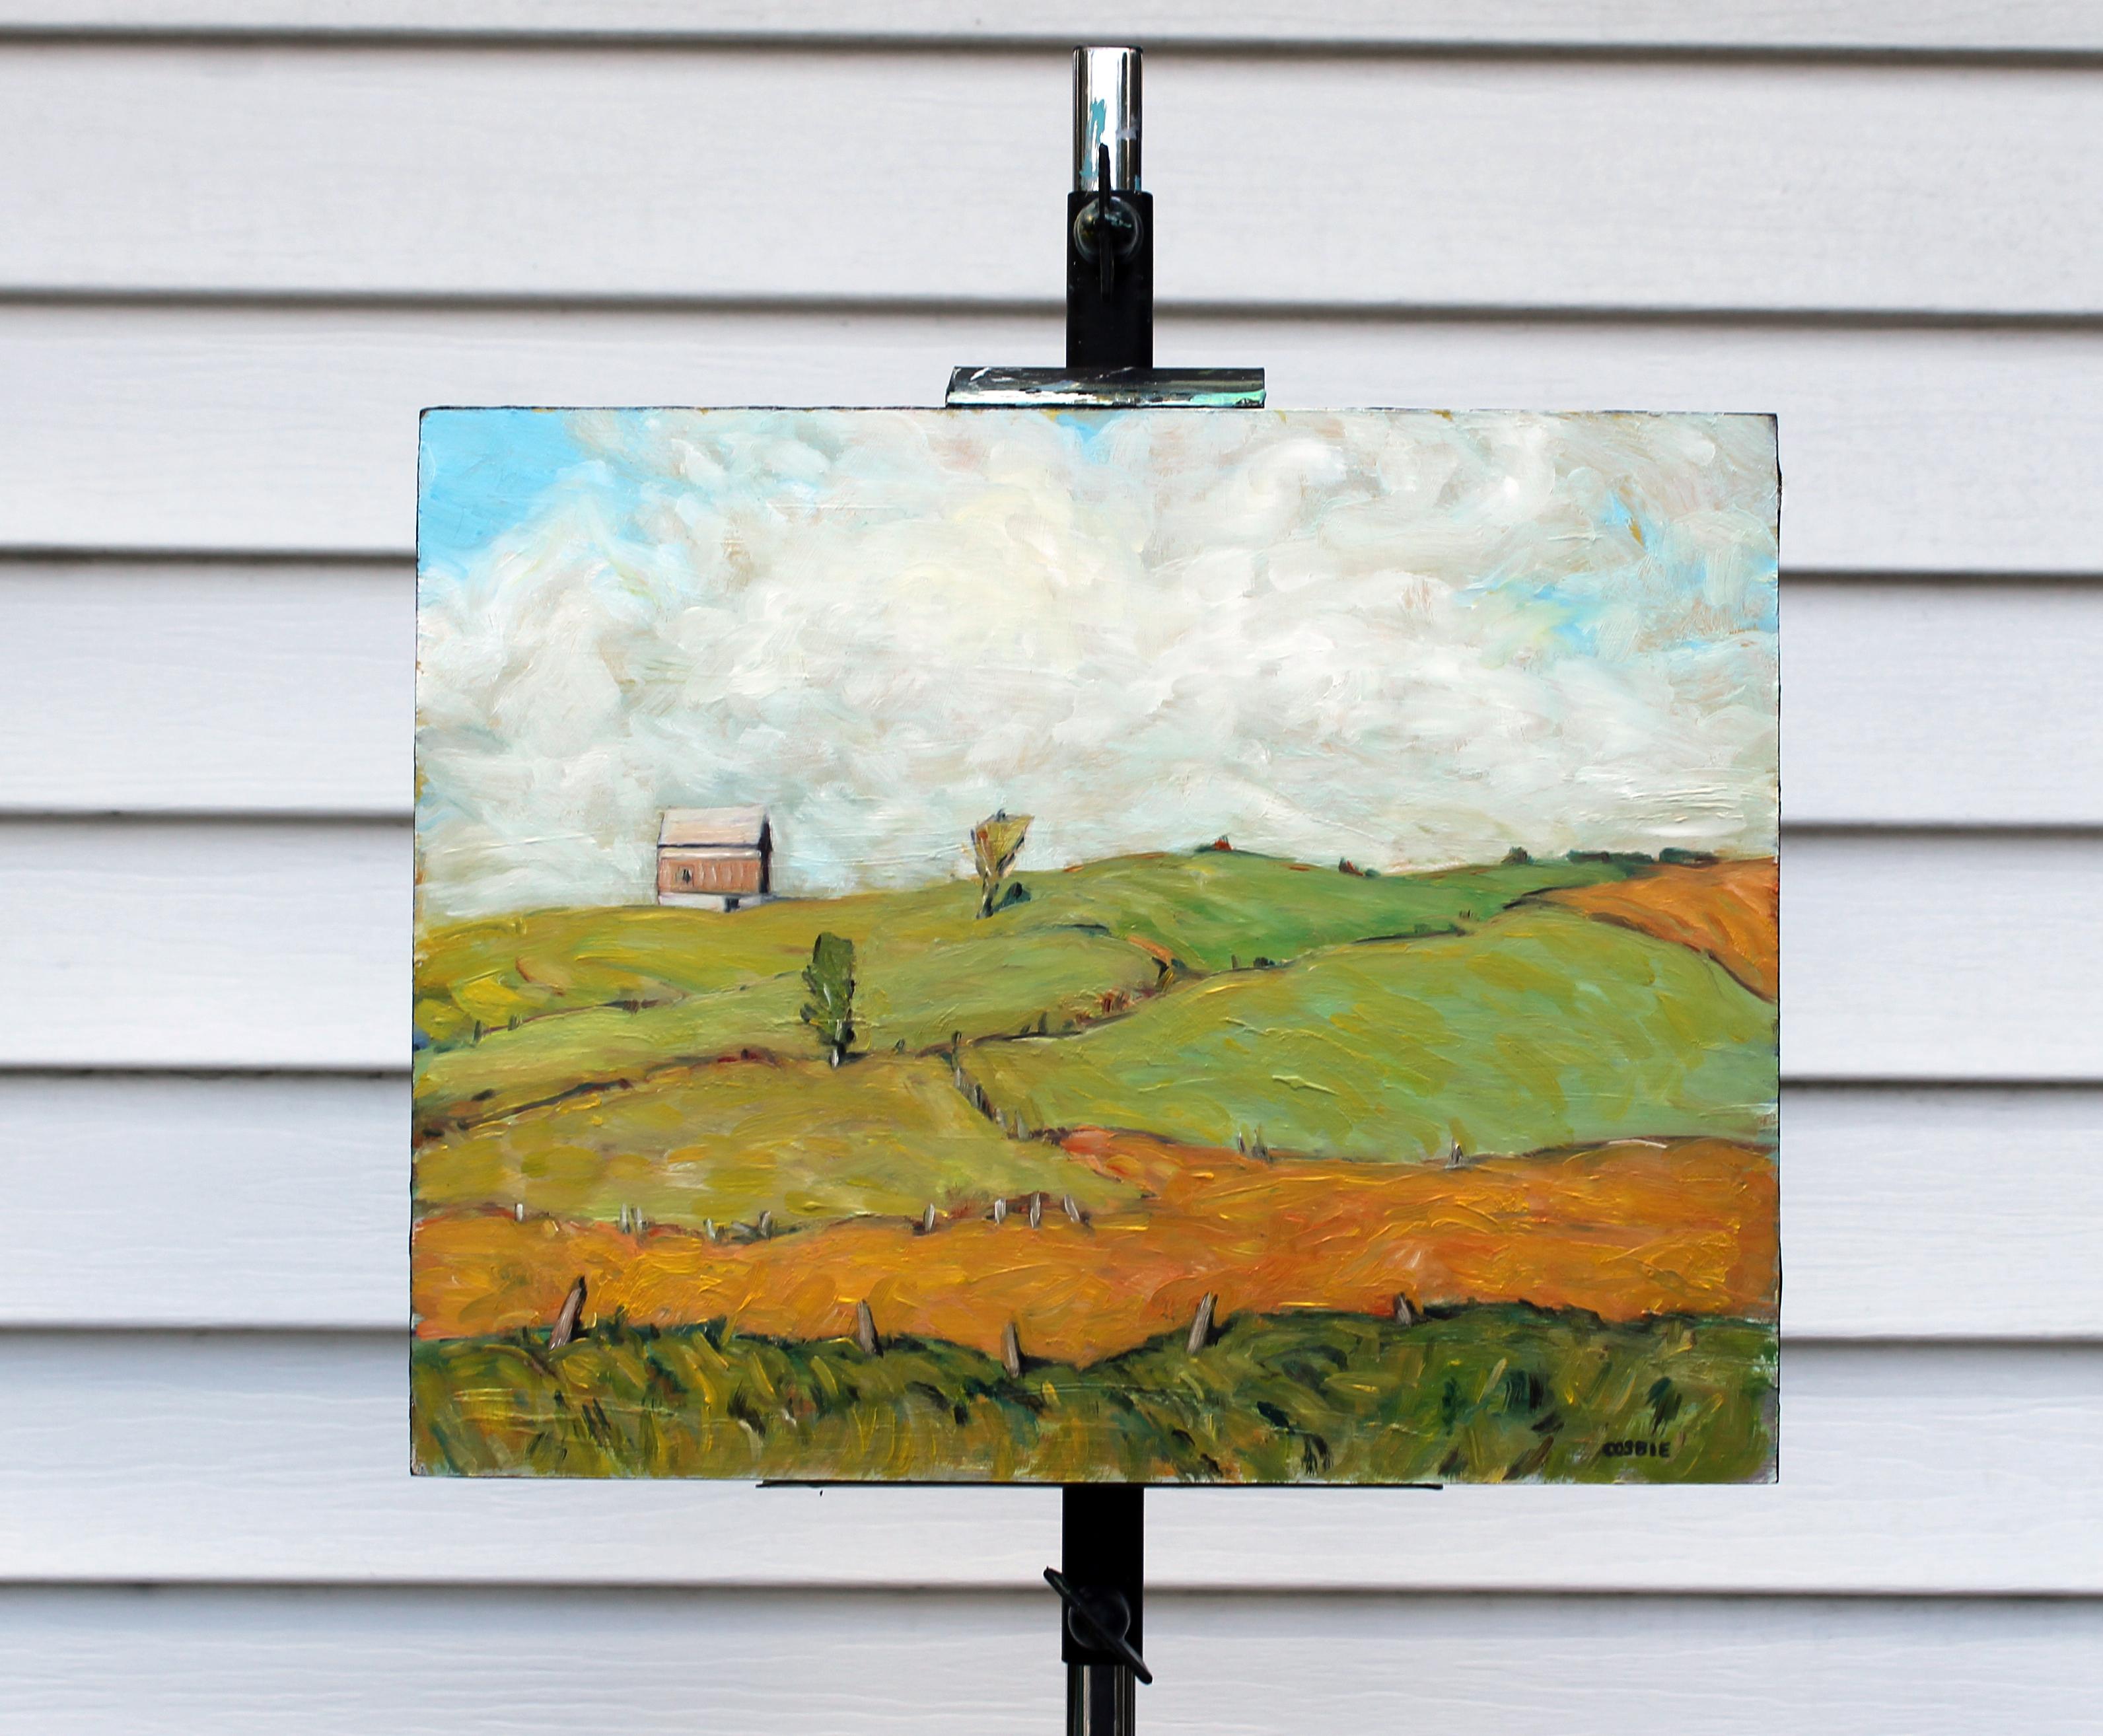 <p>Commentaires de l'artiste<br />Des champs étendus, d'un vert et d'un orange luxuriants, ondulent dans un travail de pinceau fluide. Une grange isolée se trouve sur la gauche, avec en toile de fond des nuages blancs. 